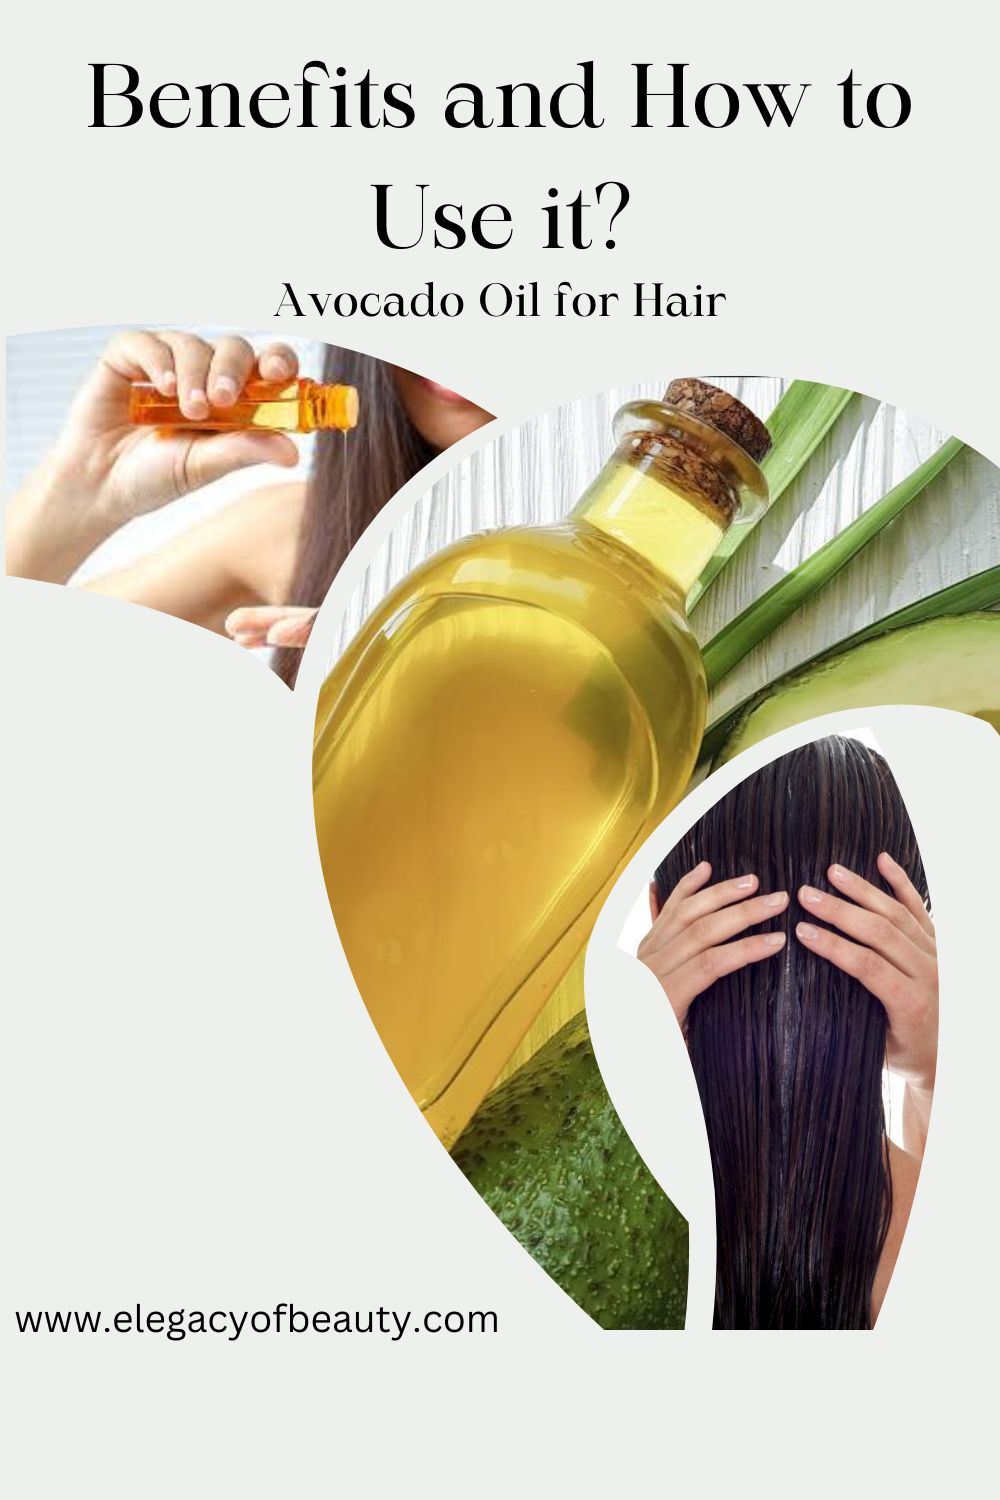 Avocado Oil for Hair